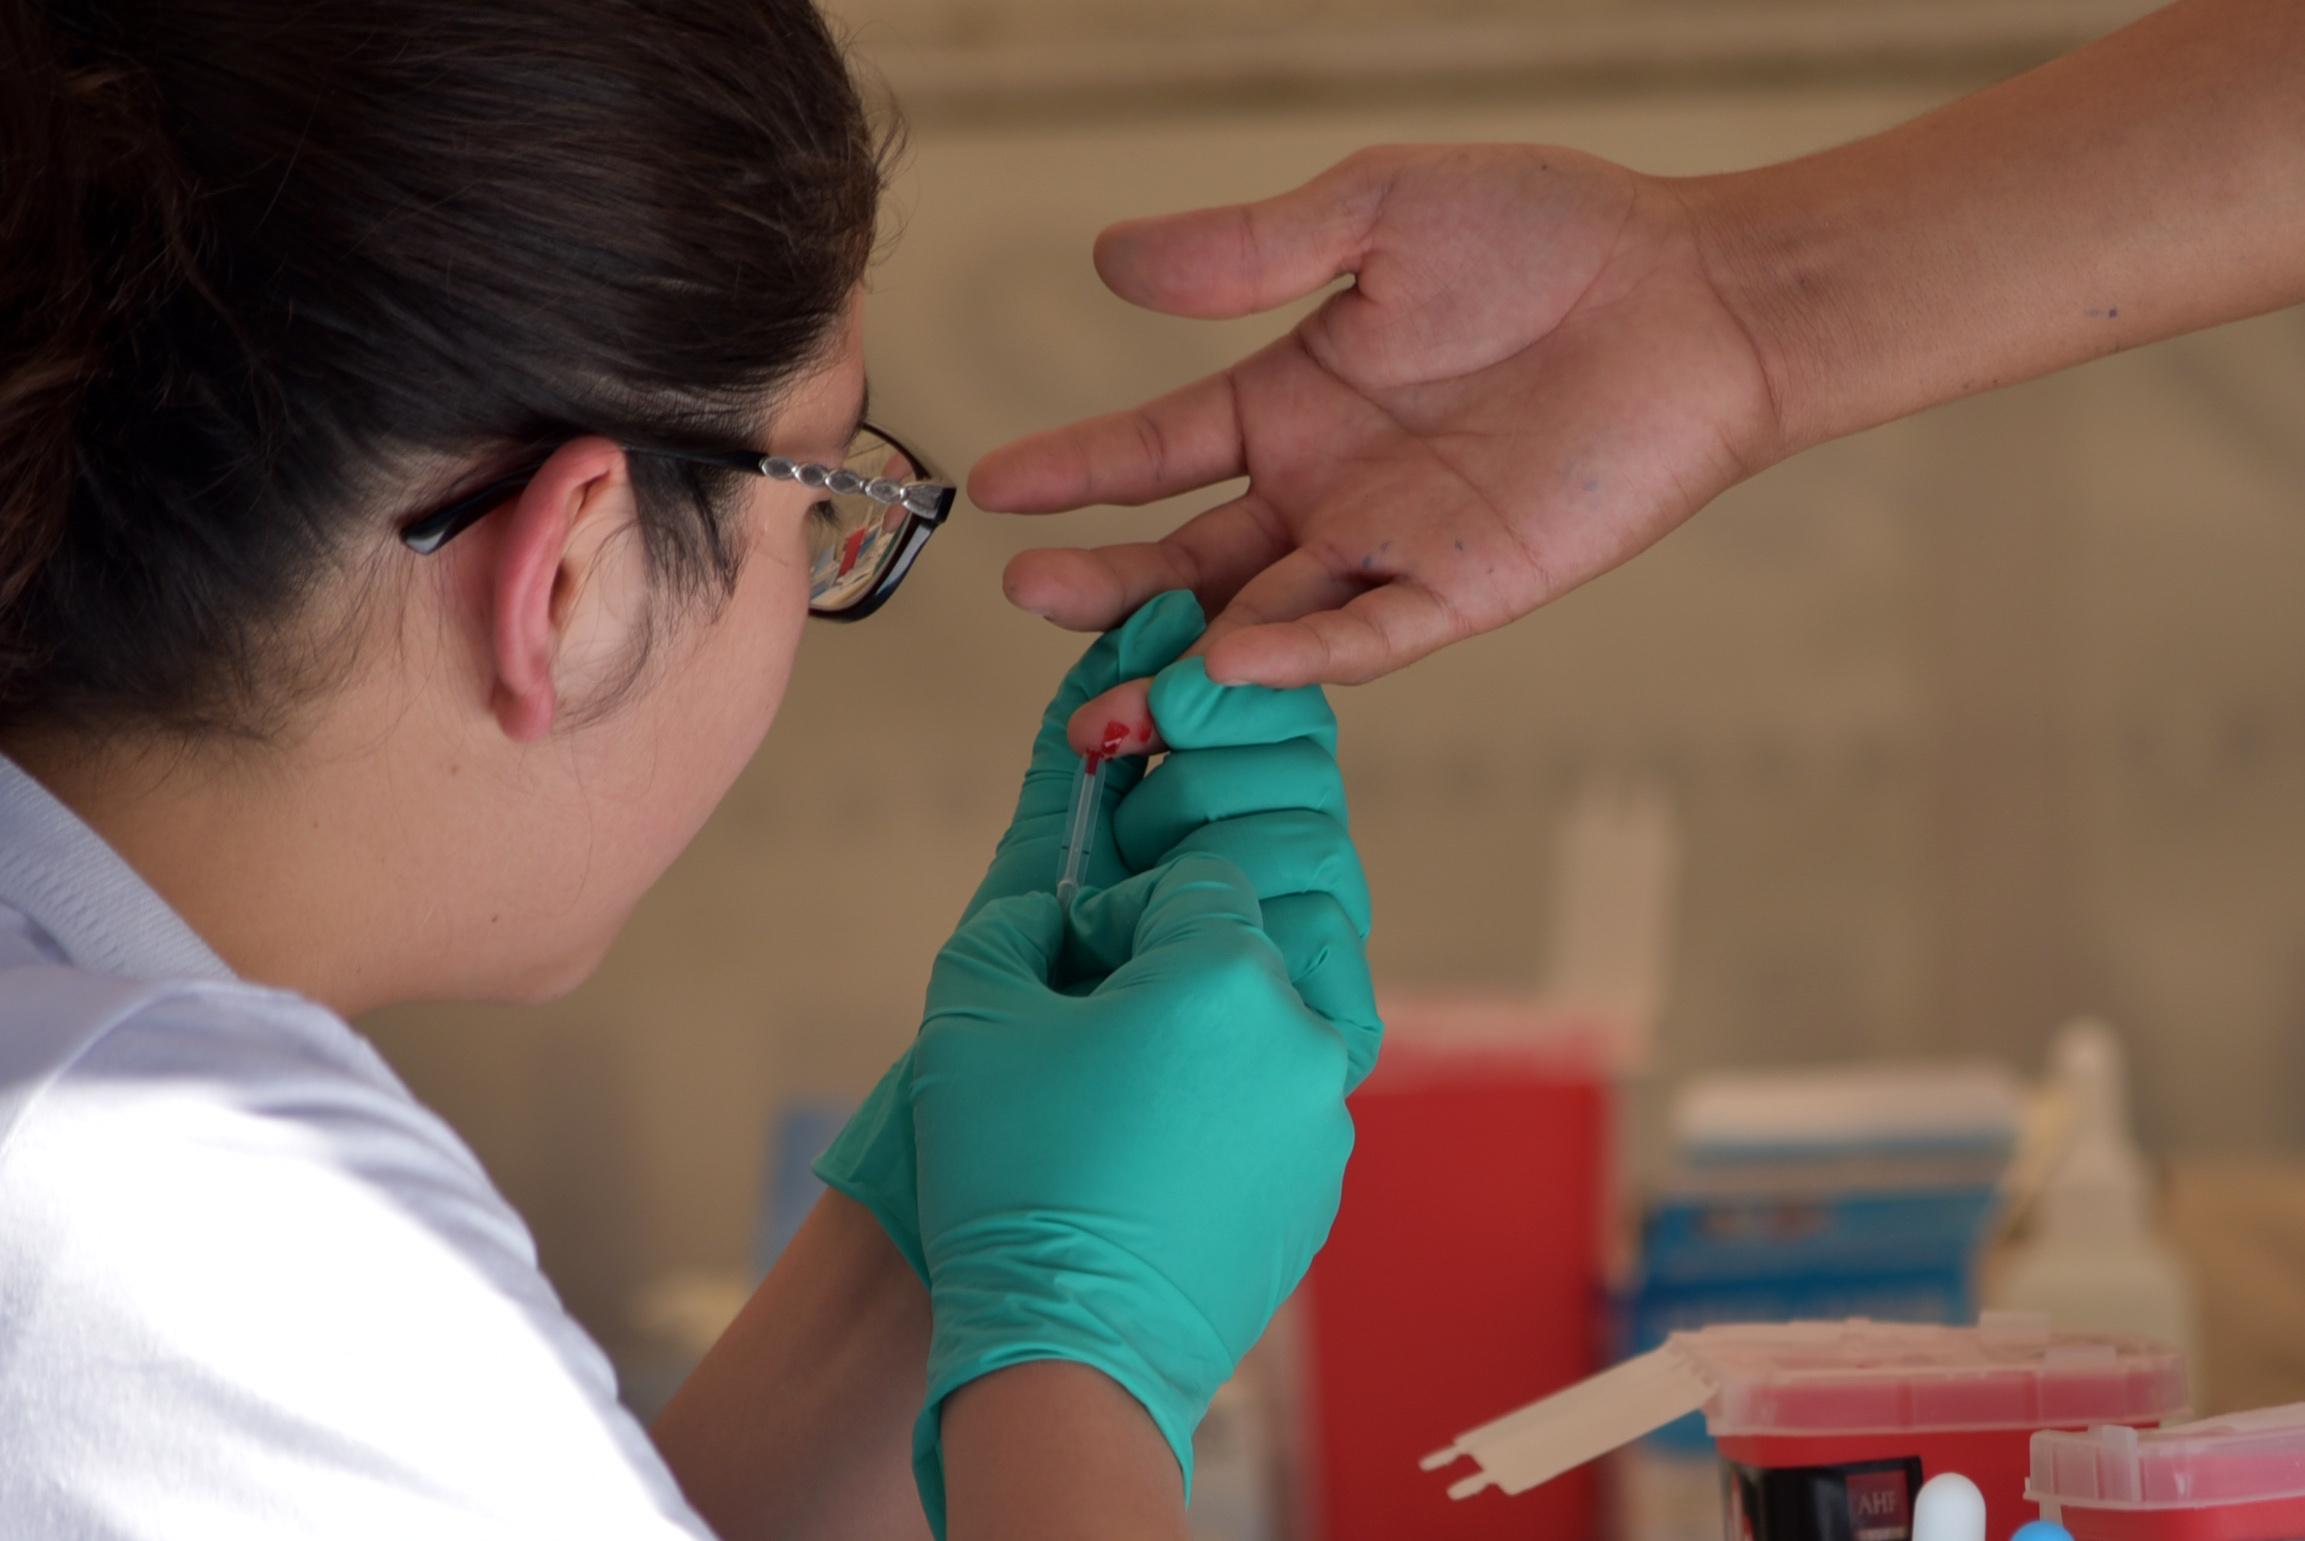 IMM en Xalapa realiza campaña permanente de detección de VIH